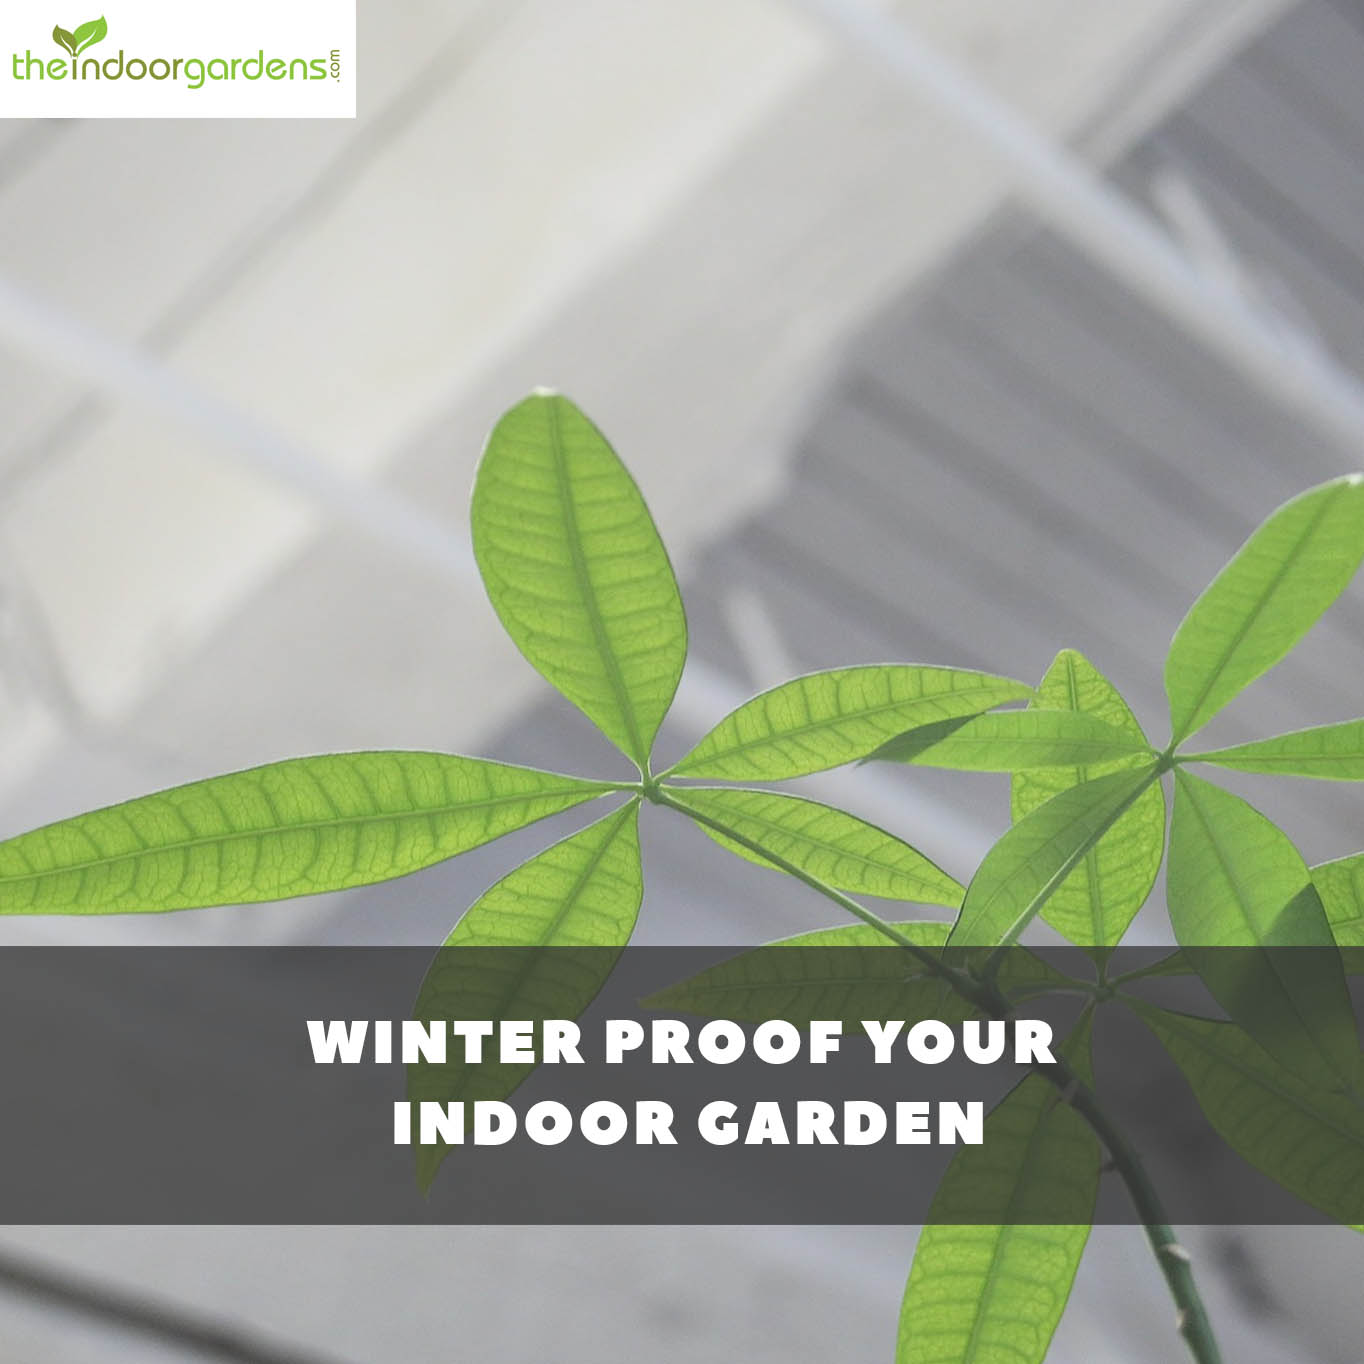 Winter Care For Your Indoor Garden: Winter Proof Your Garden